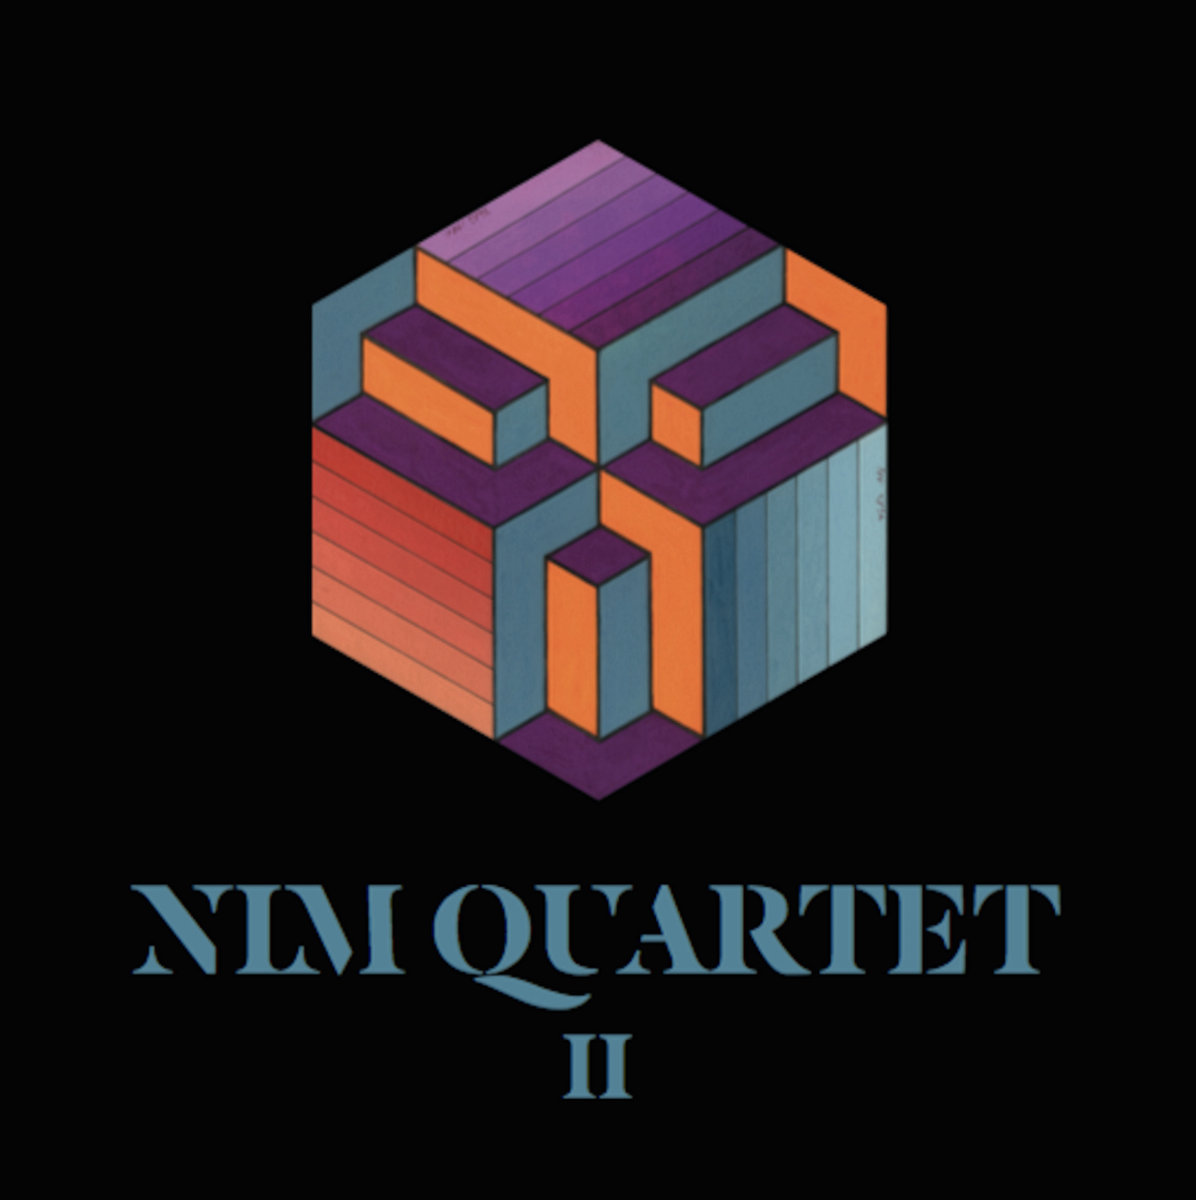 NIM QUARTET - Nim Quartet II cover 